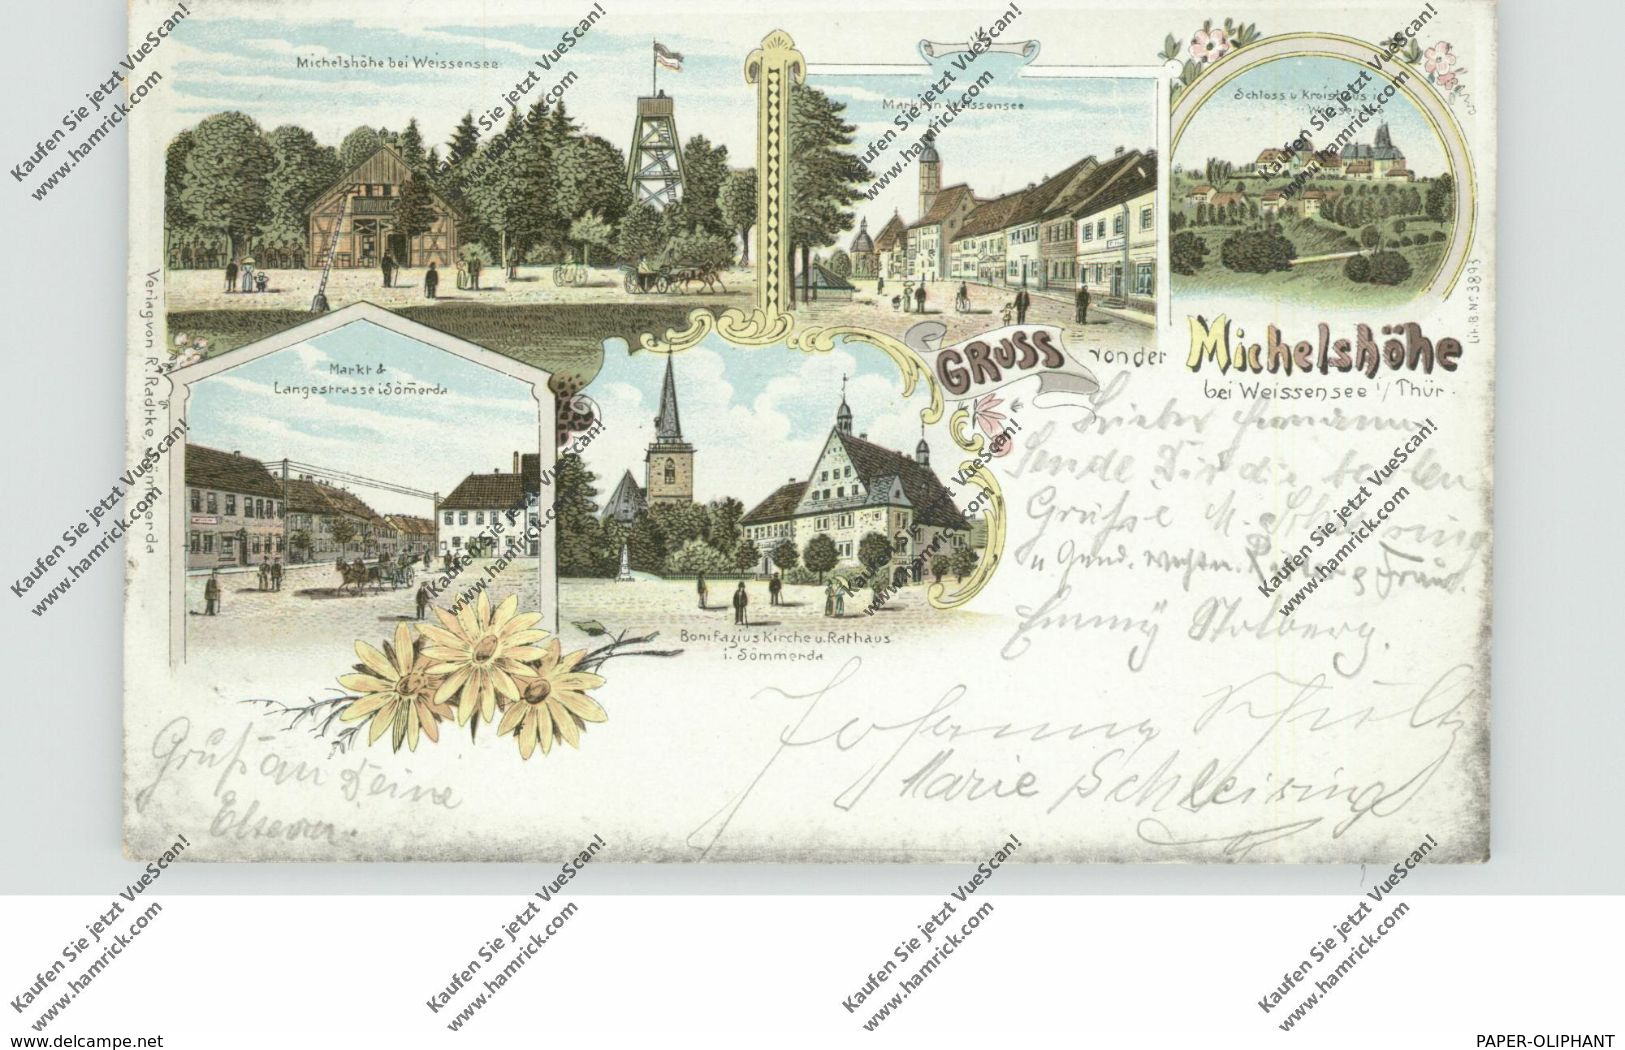 0-5237 WEISSENSEE, Lithographie, Markt, Schloß, Kreishaus, Michelshöhe, Sömmerda Langestrasse & Markt... - Weissensee